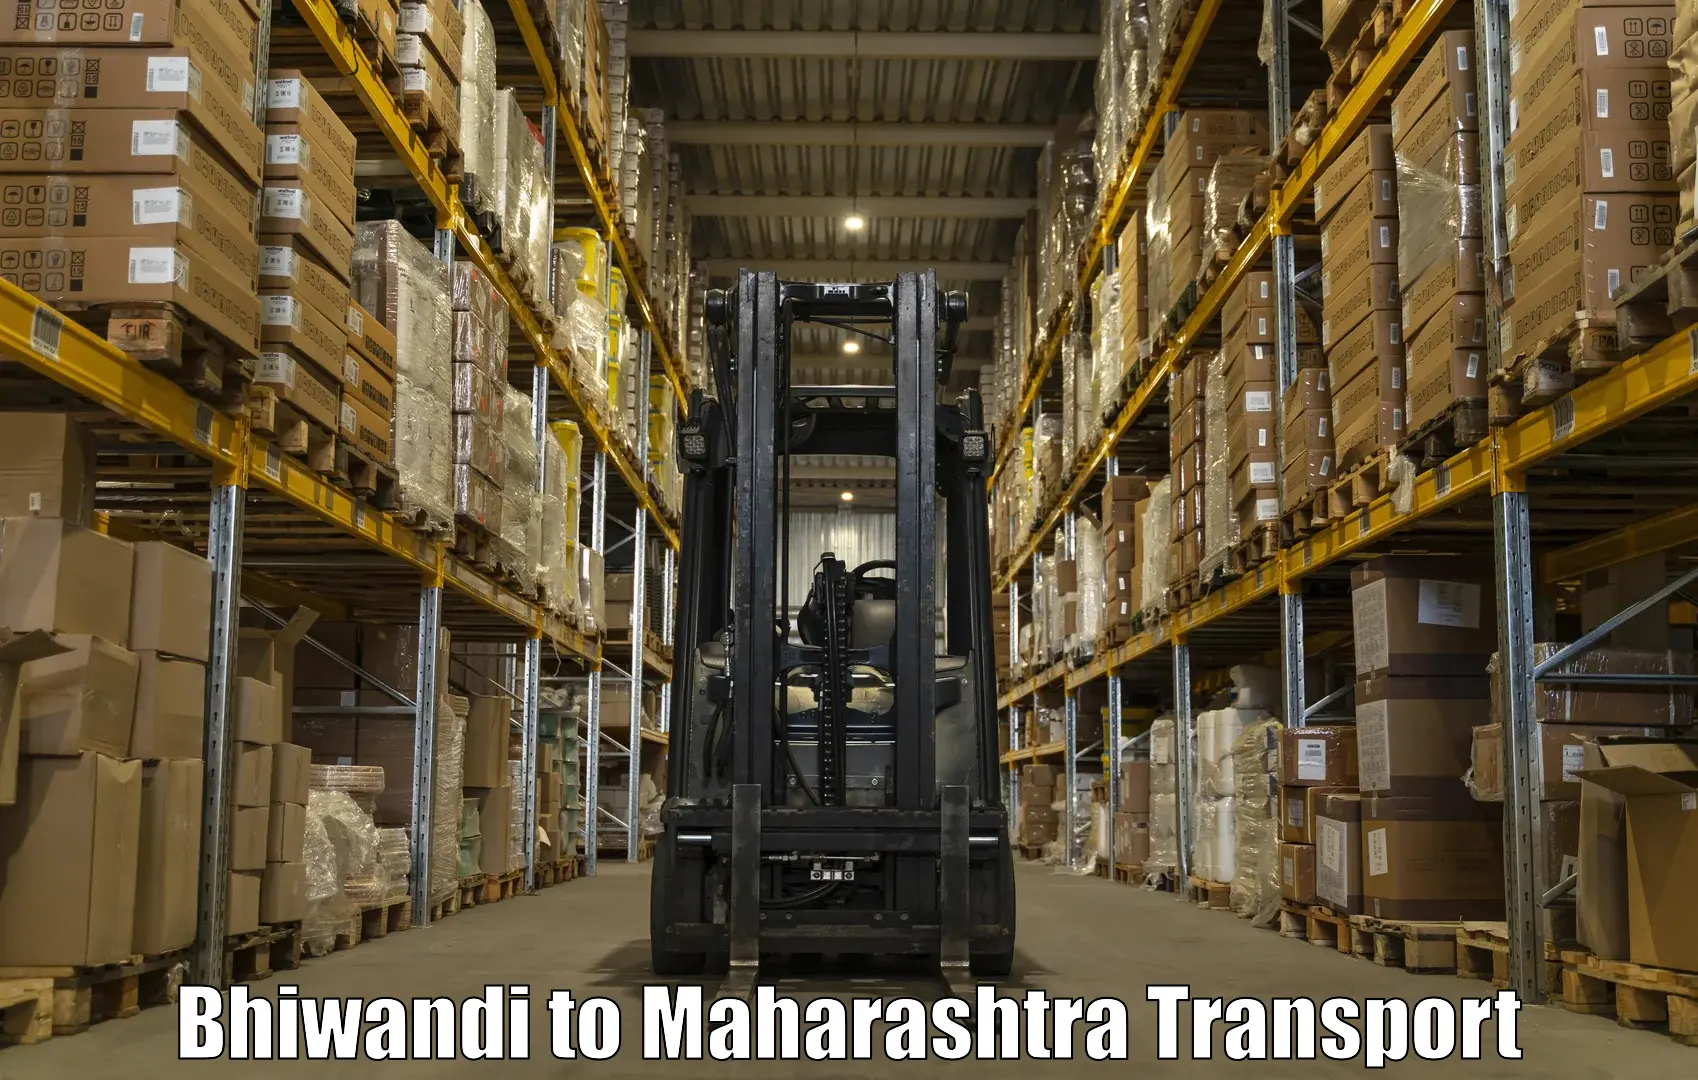 Shipping partner Bhiwandi to Nandura